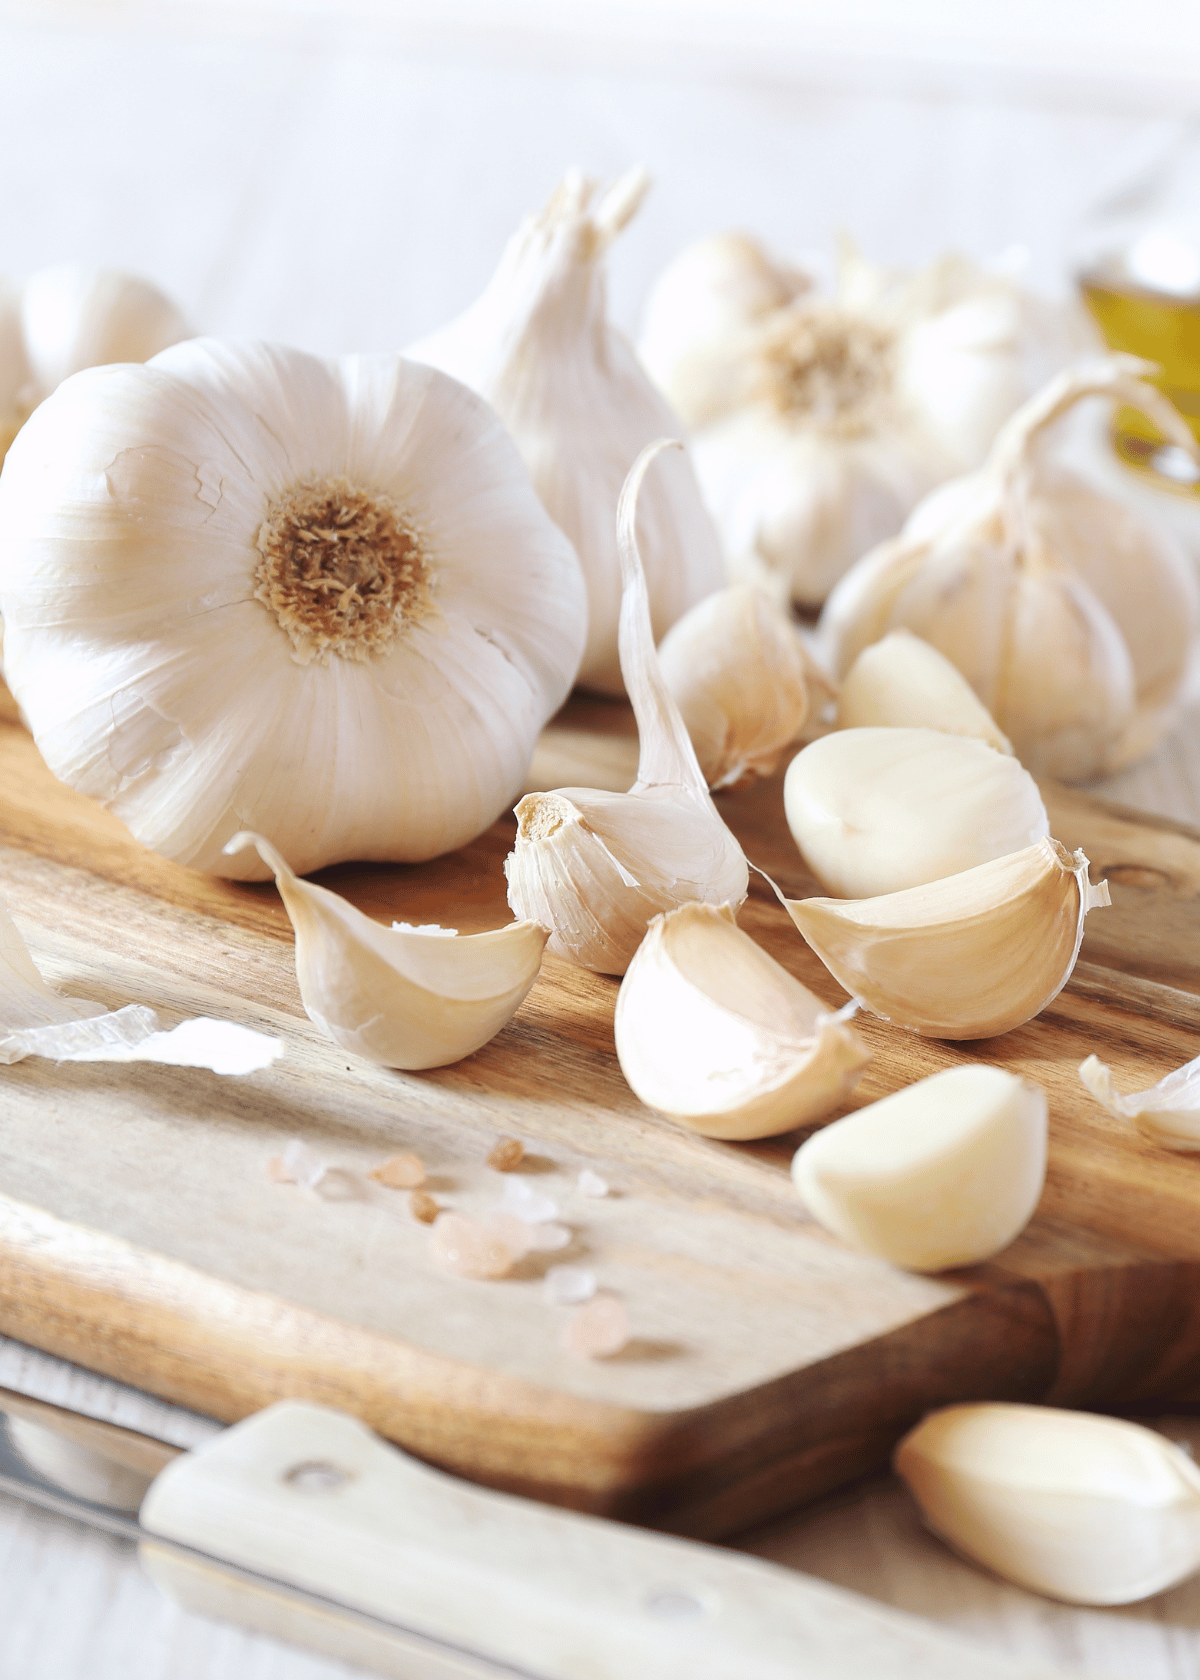 best garlic press